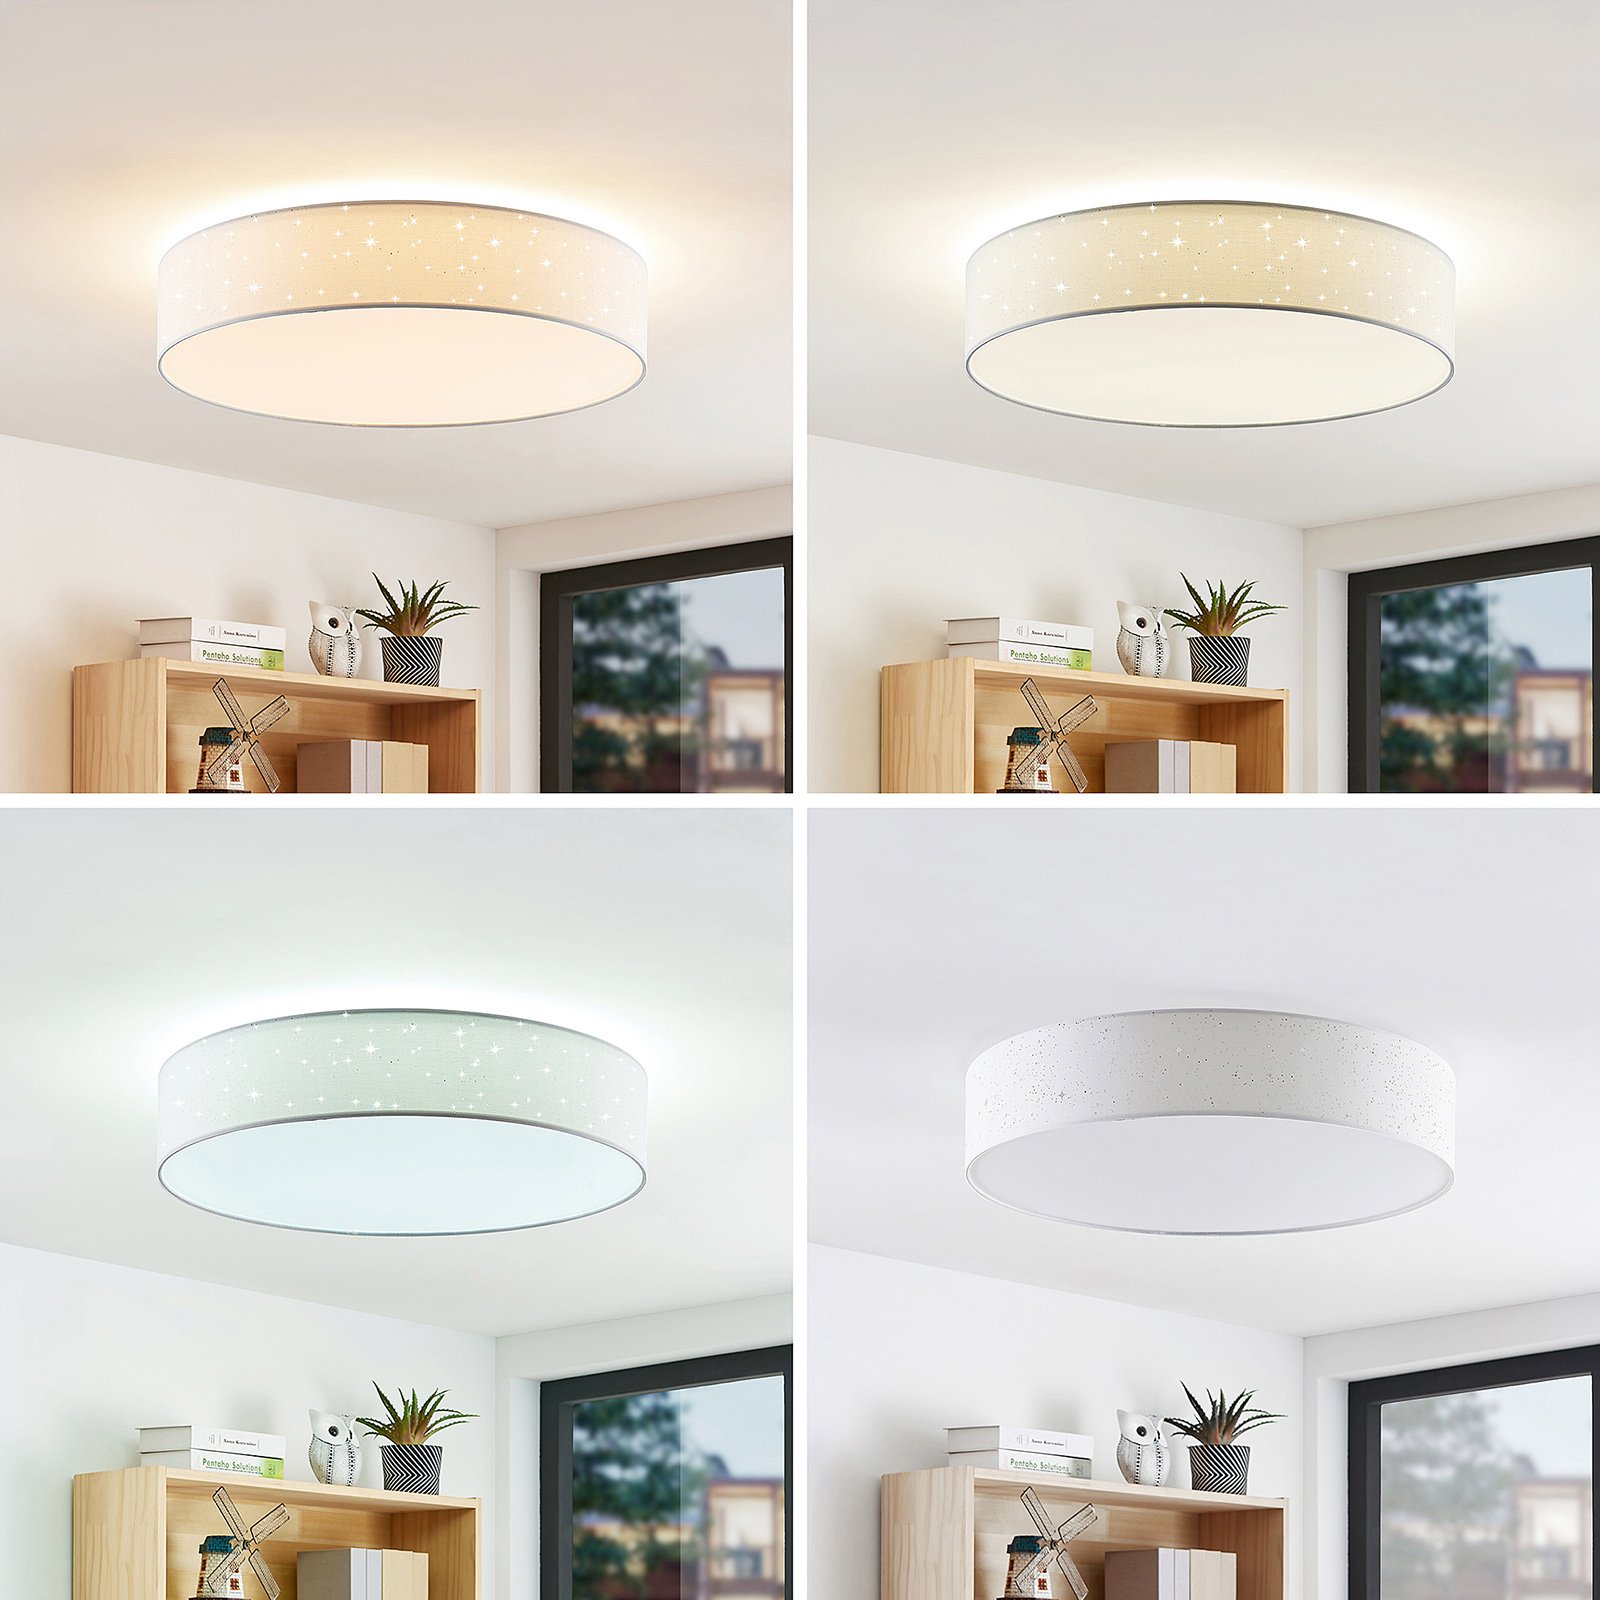 Lindby Ellamina stropné LED svietidlo 60 cm, biele